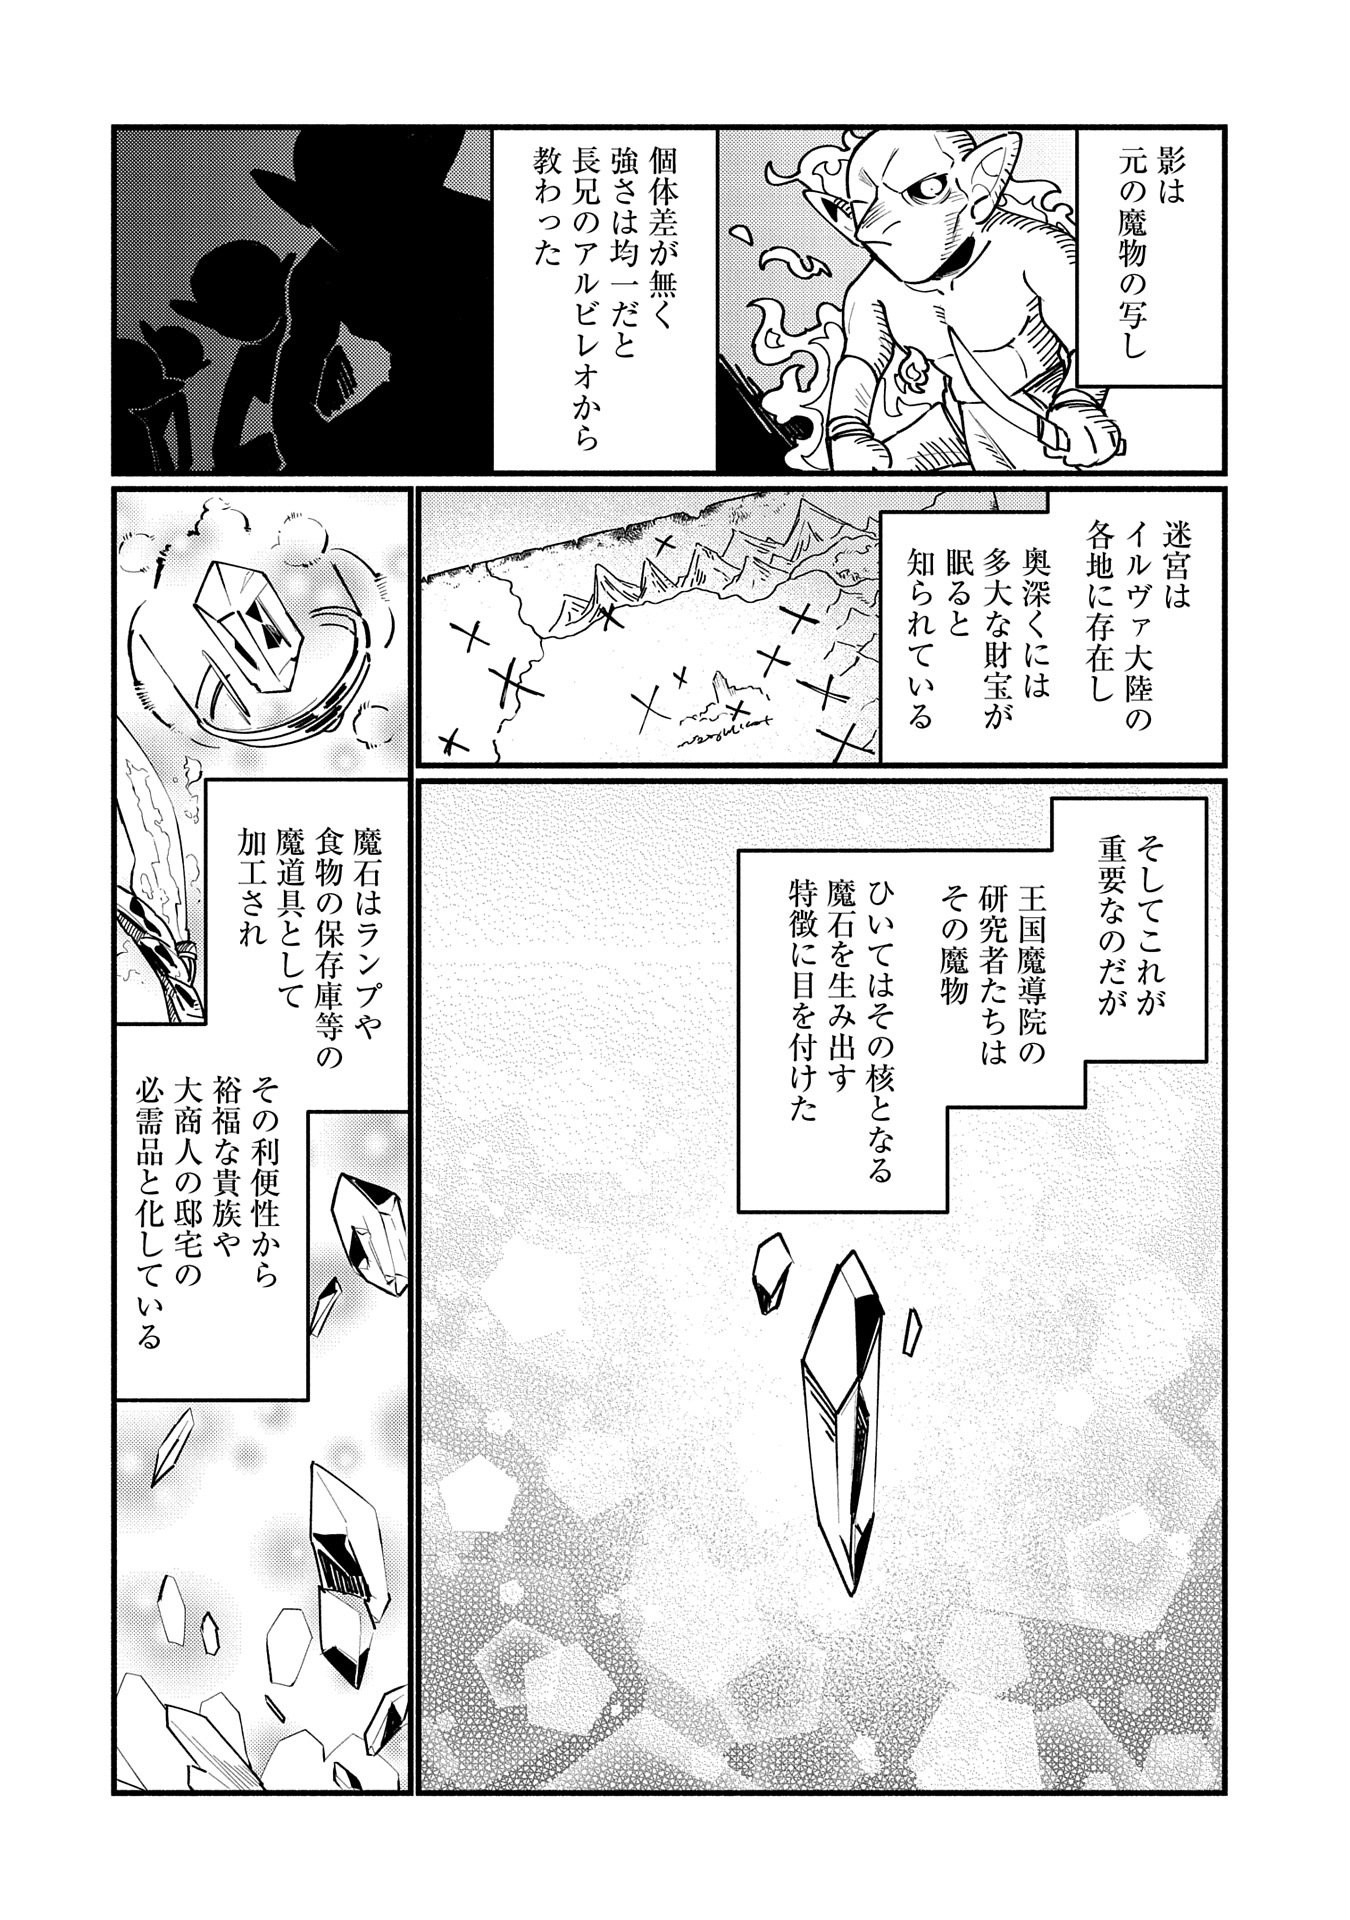 貧乏貴族ノードの冒険譚 第1話 - Page 26